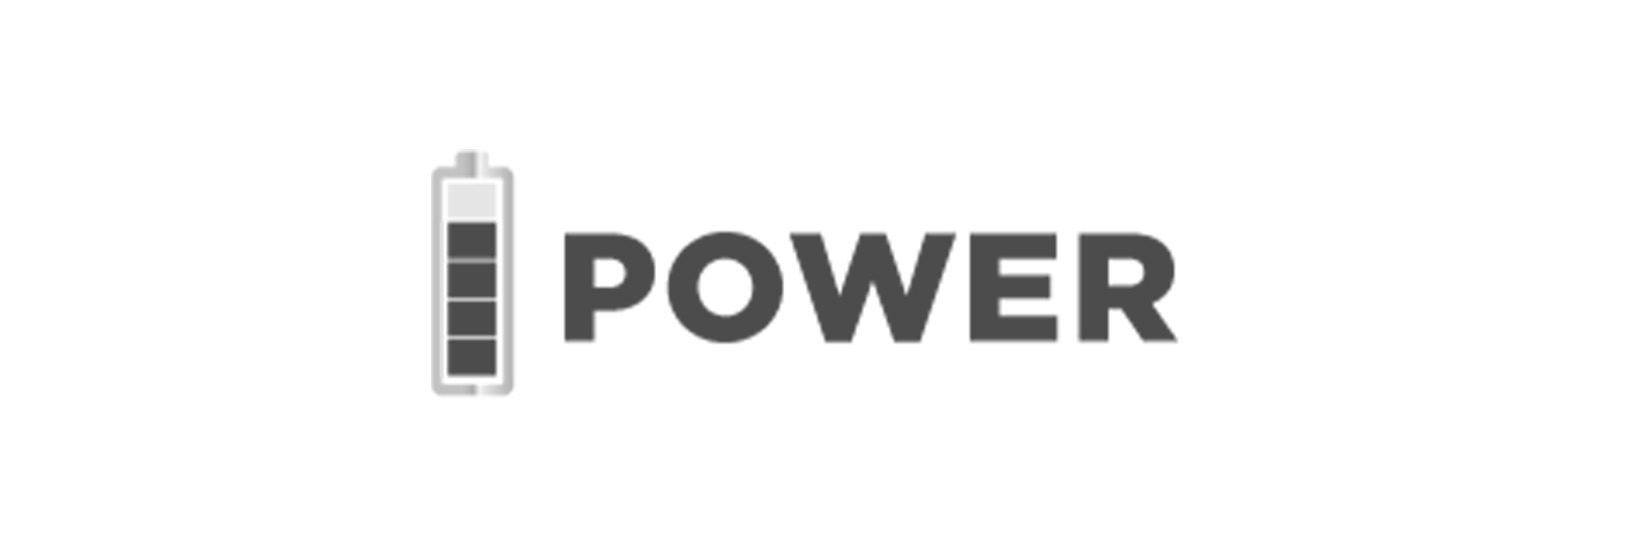 POWER Digital Lenses logo image